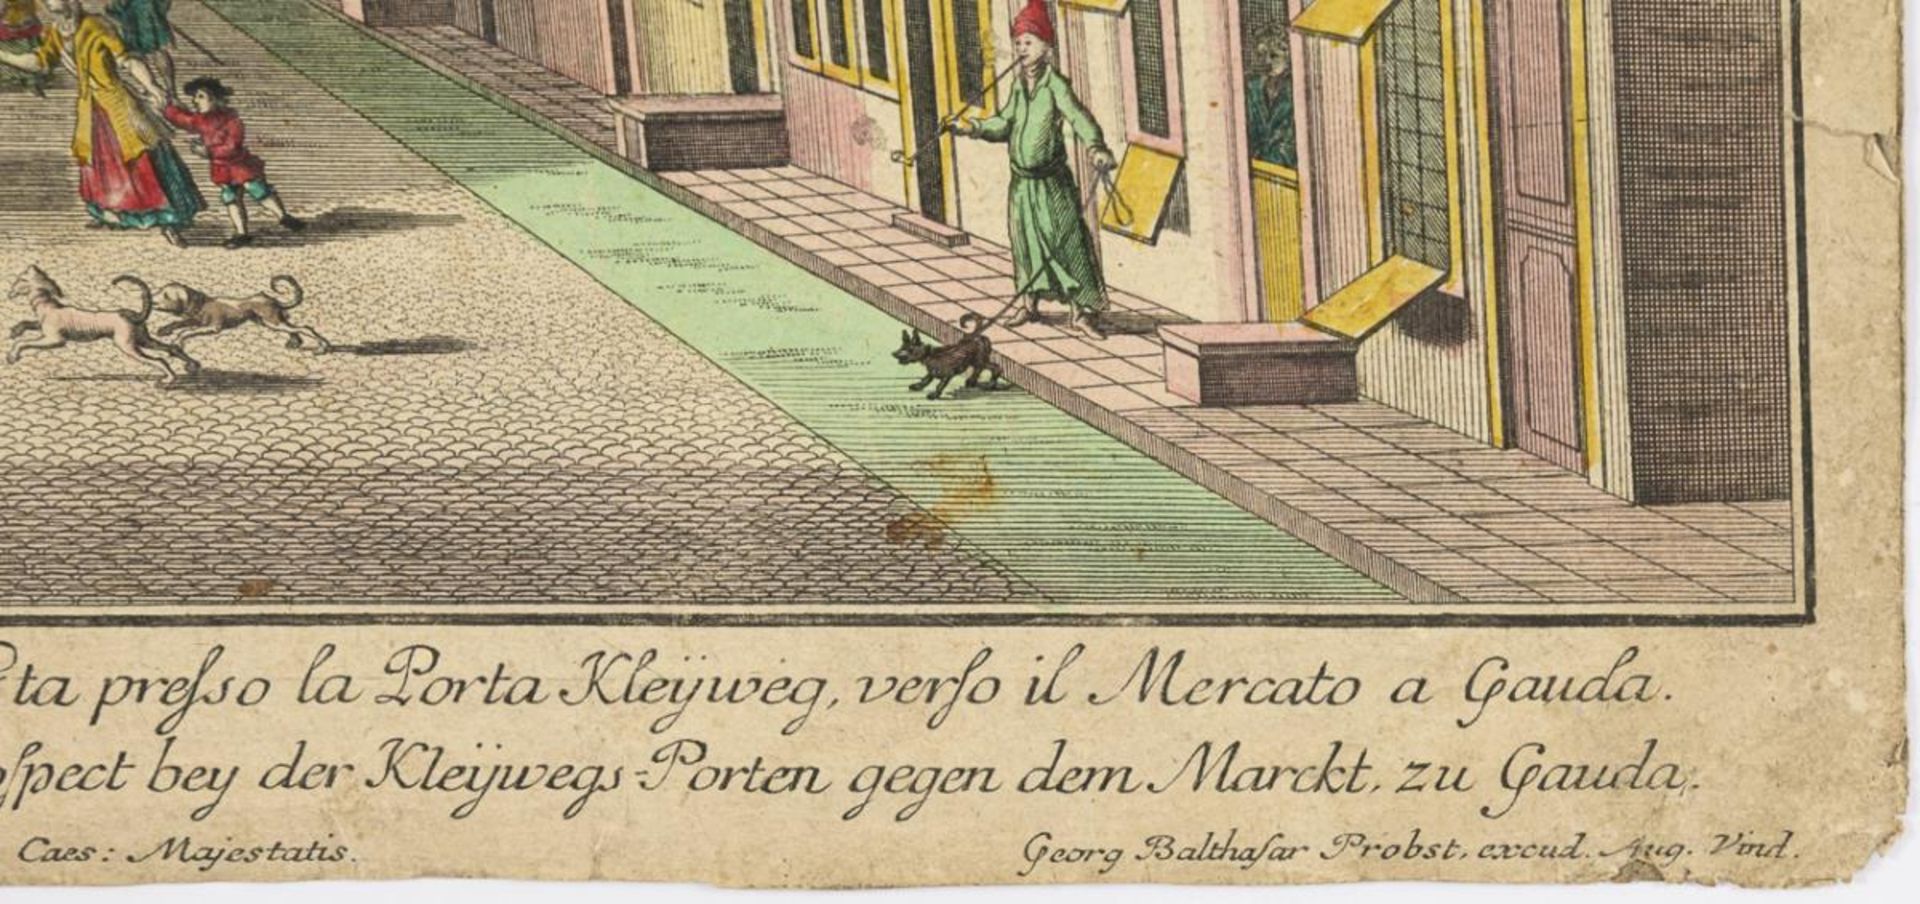 PROBST, Georg Balthasar. Ansicht der belebten Marktstraße der Stadt Gouda. - Bild 2 aus 2